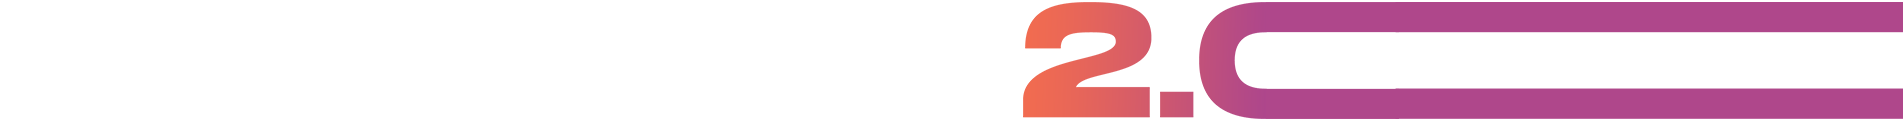 logo daq2-online Une pédagogie innovante pour inventer et construire son projet professionnel 